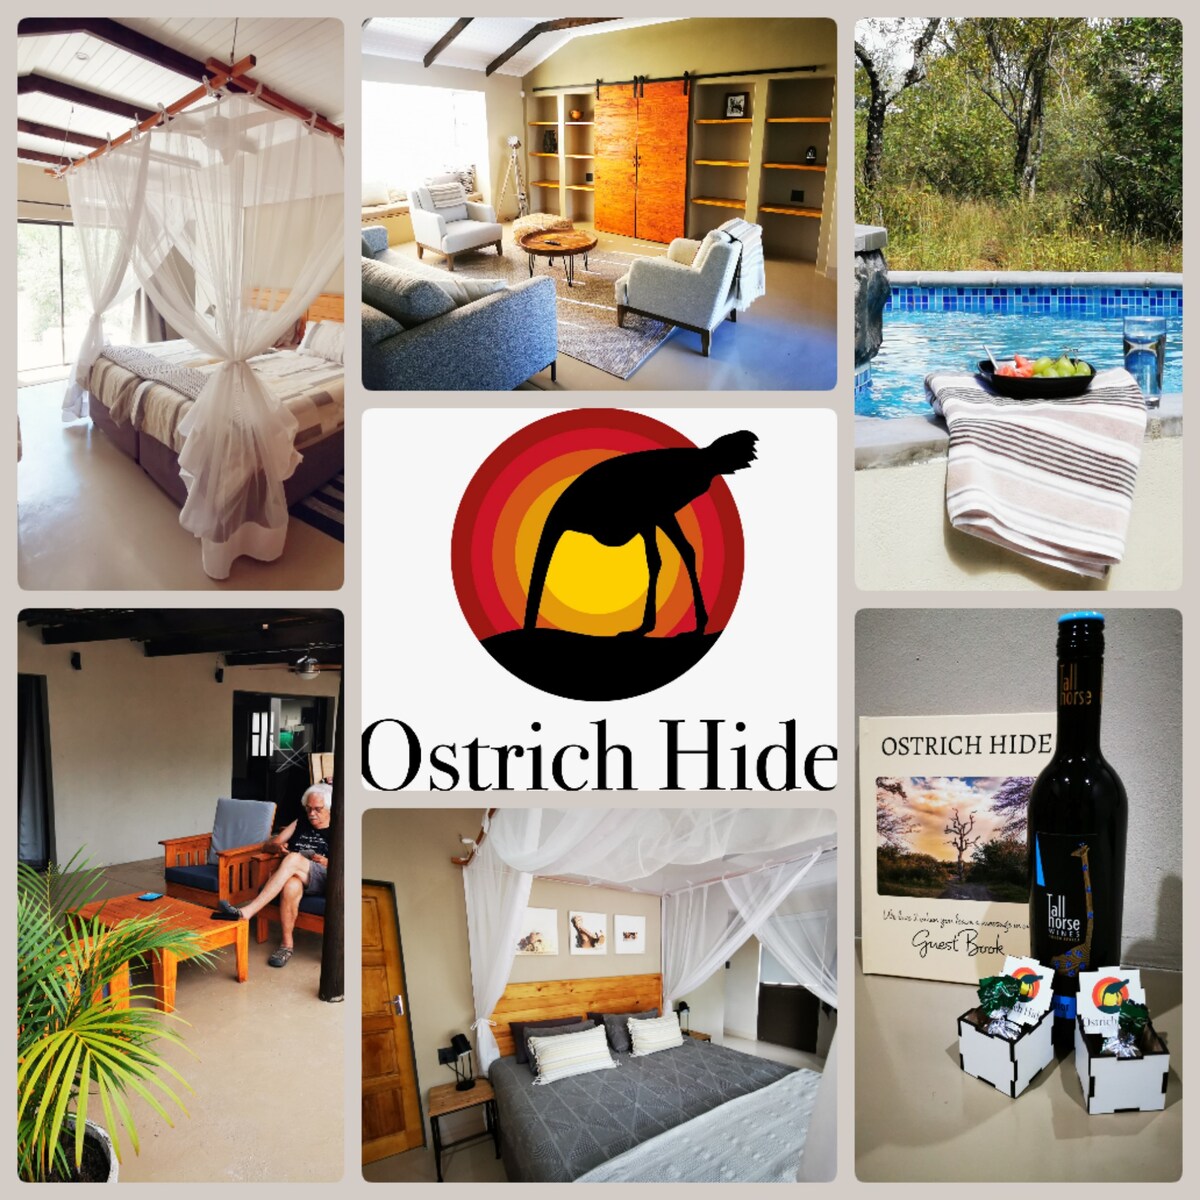 Ostrich Hide Marloth Park